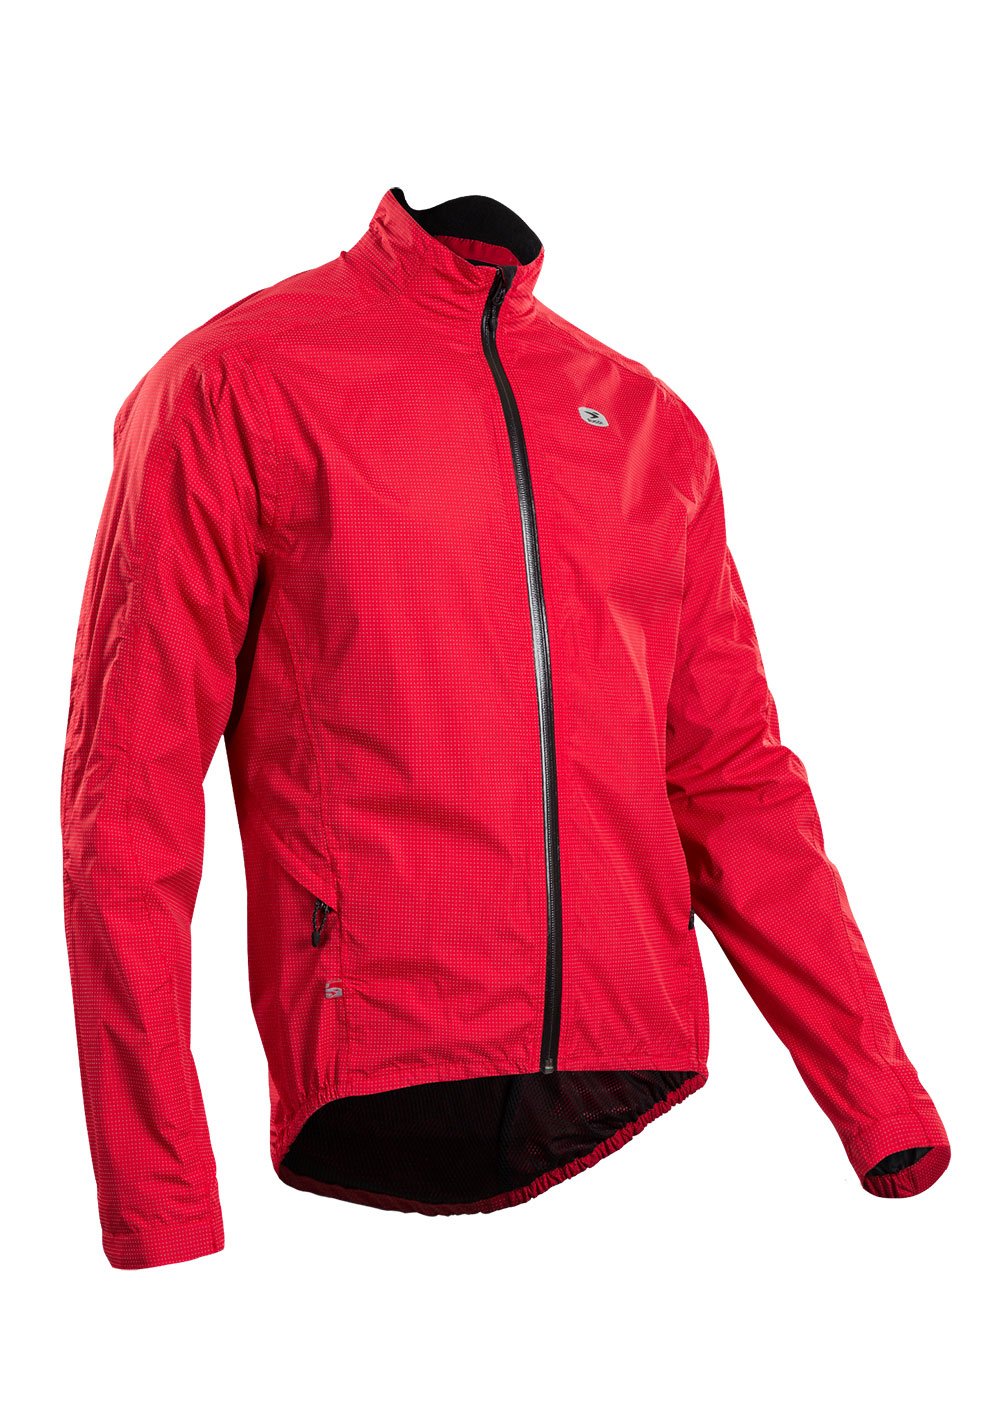 Куртка Sugoi ZAP BIKE, светоотражающая ткань, мужская, CHI (красная), XXL фото 